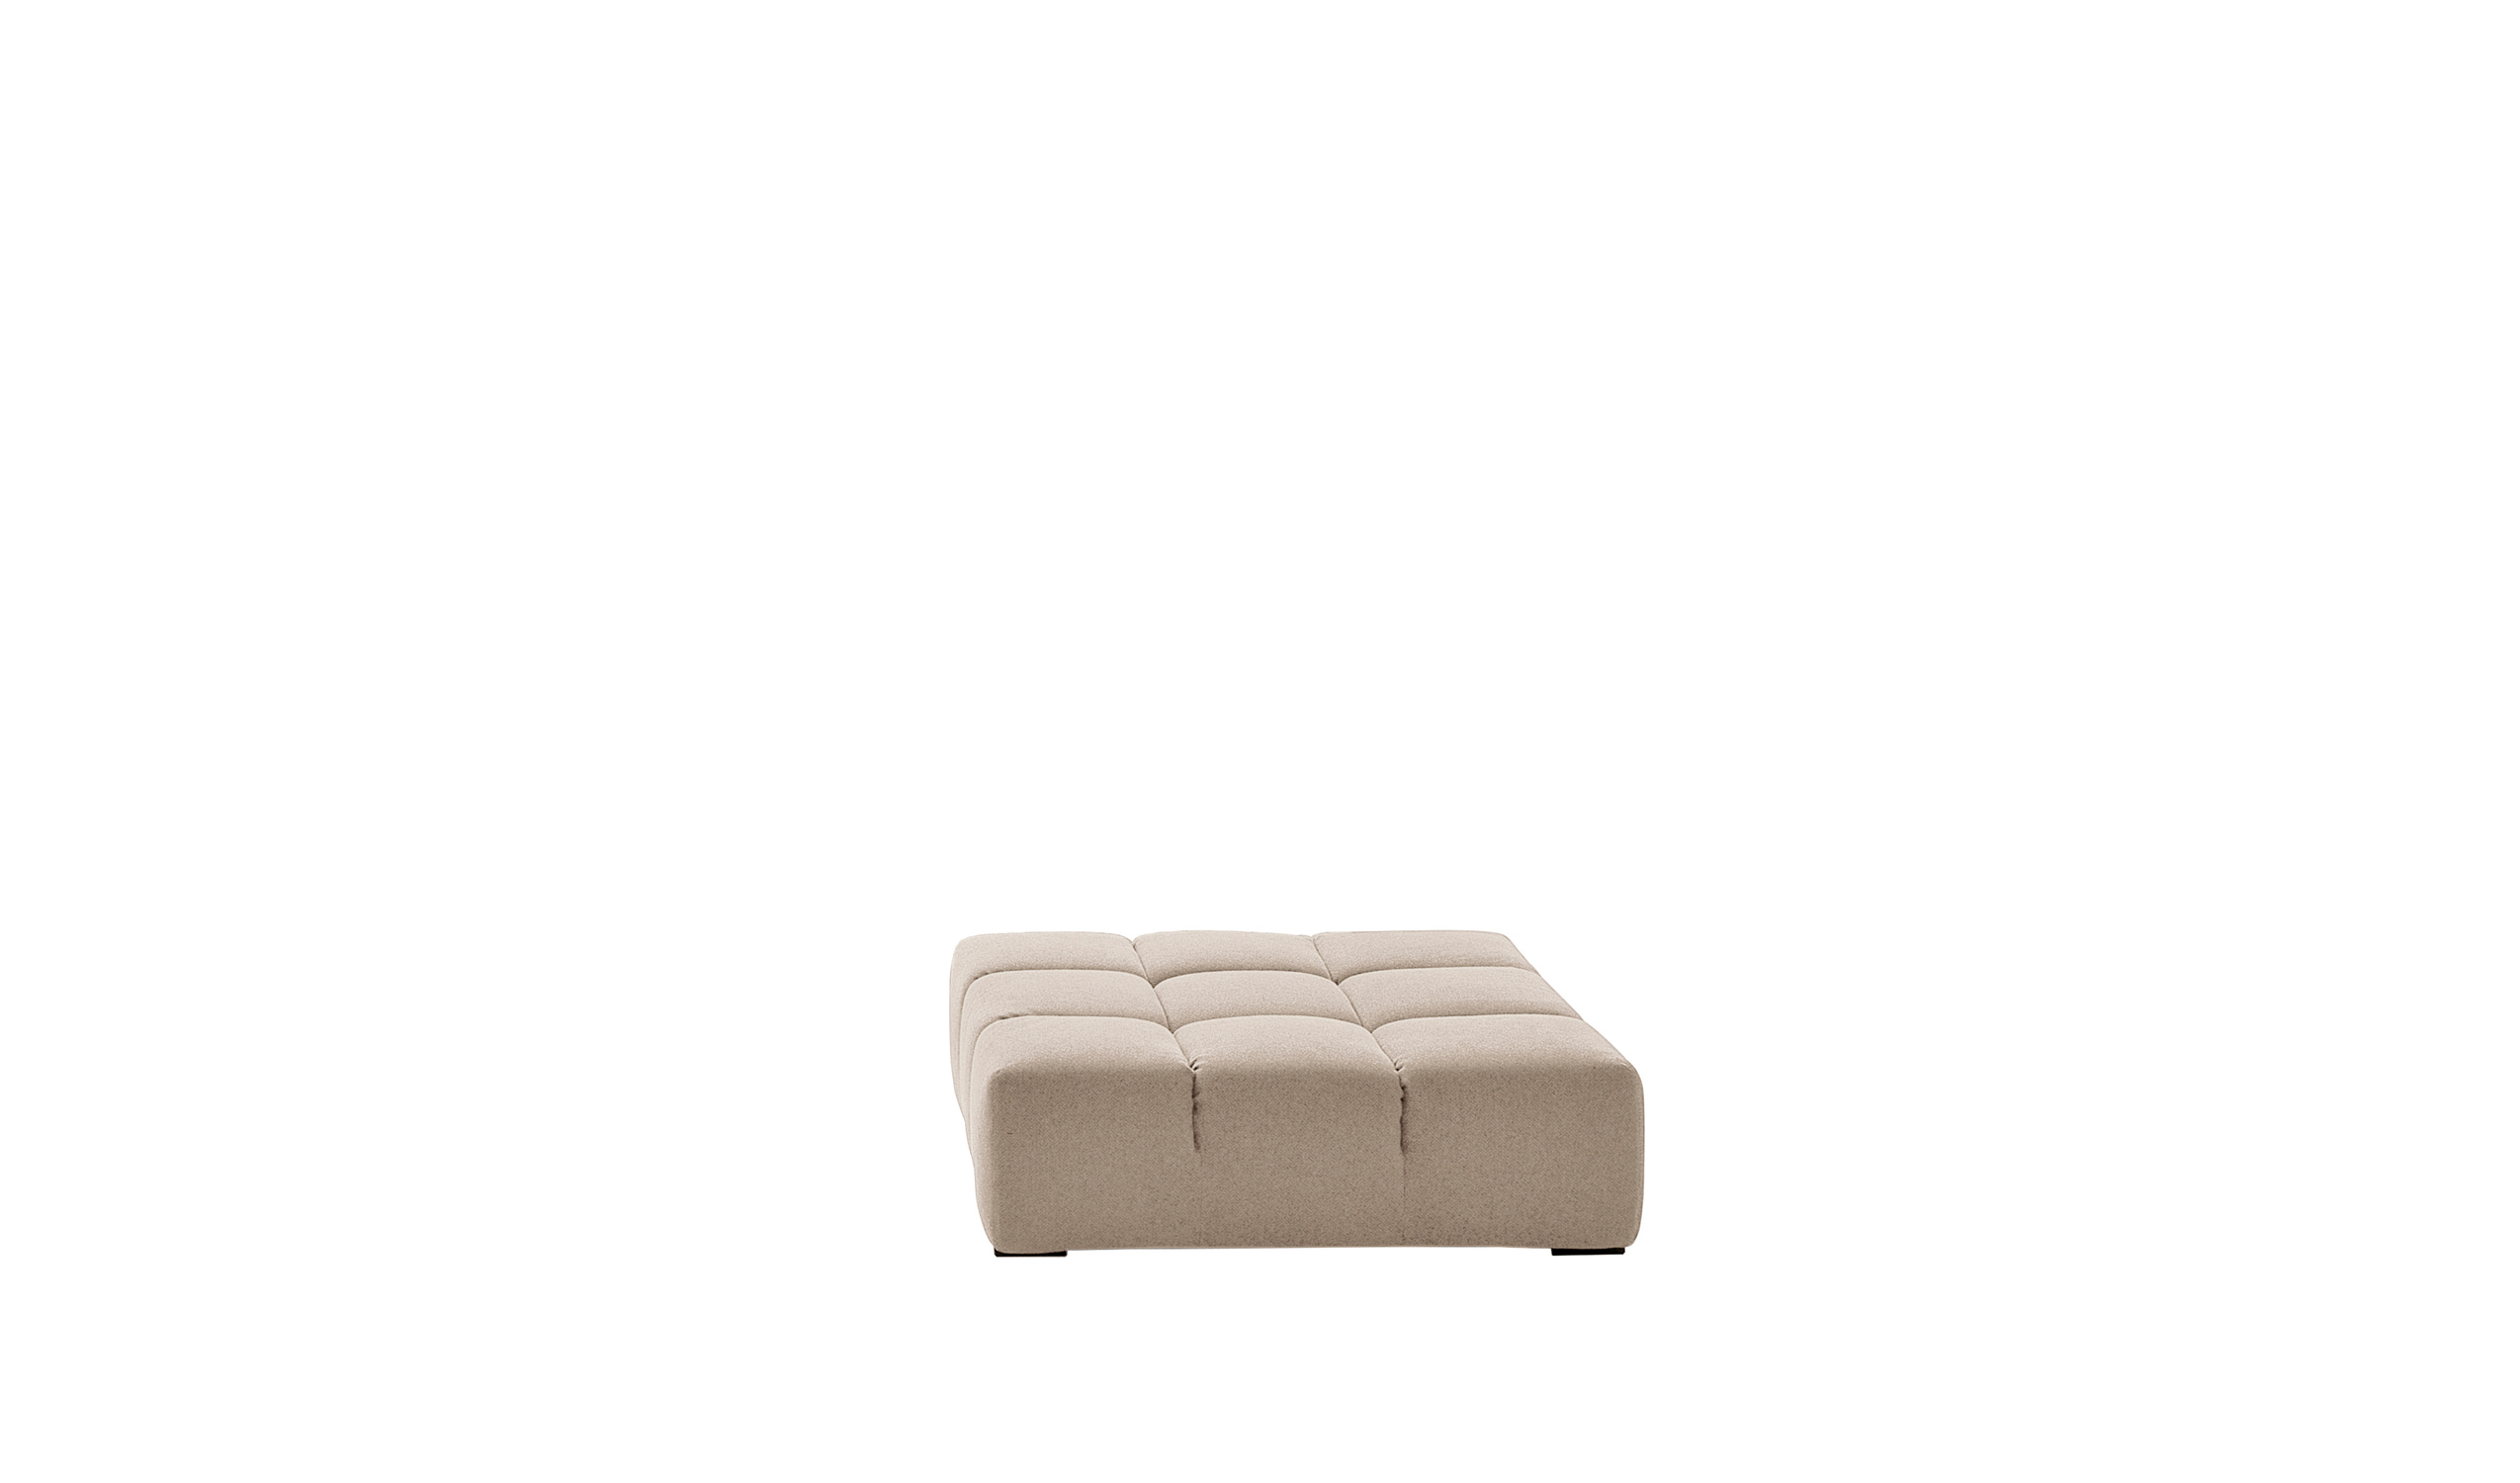 Modern designer italian sofas - Tufty-Time Sofas 6